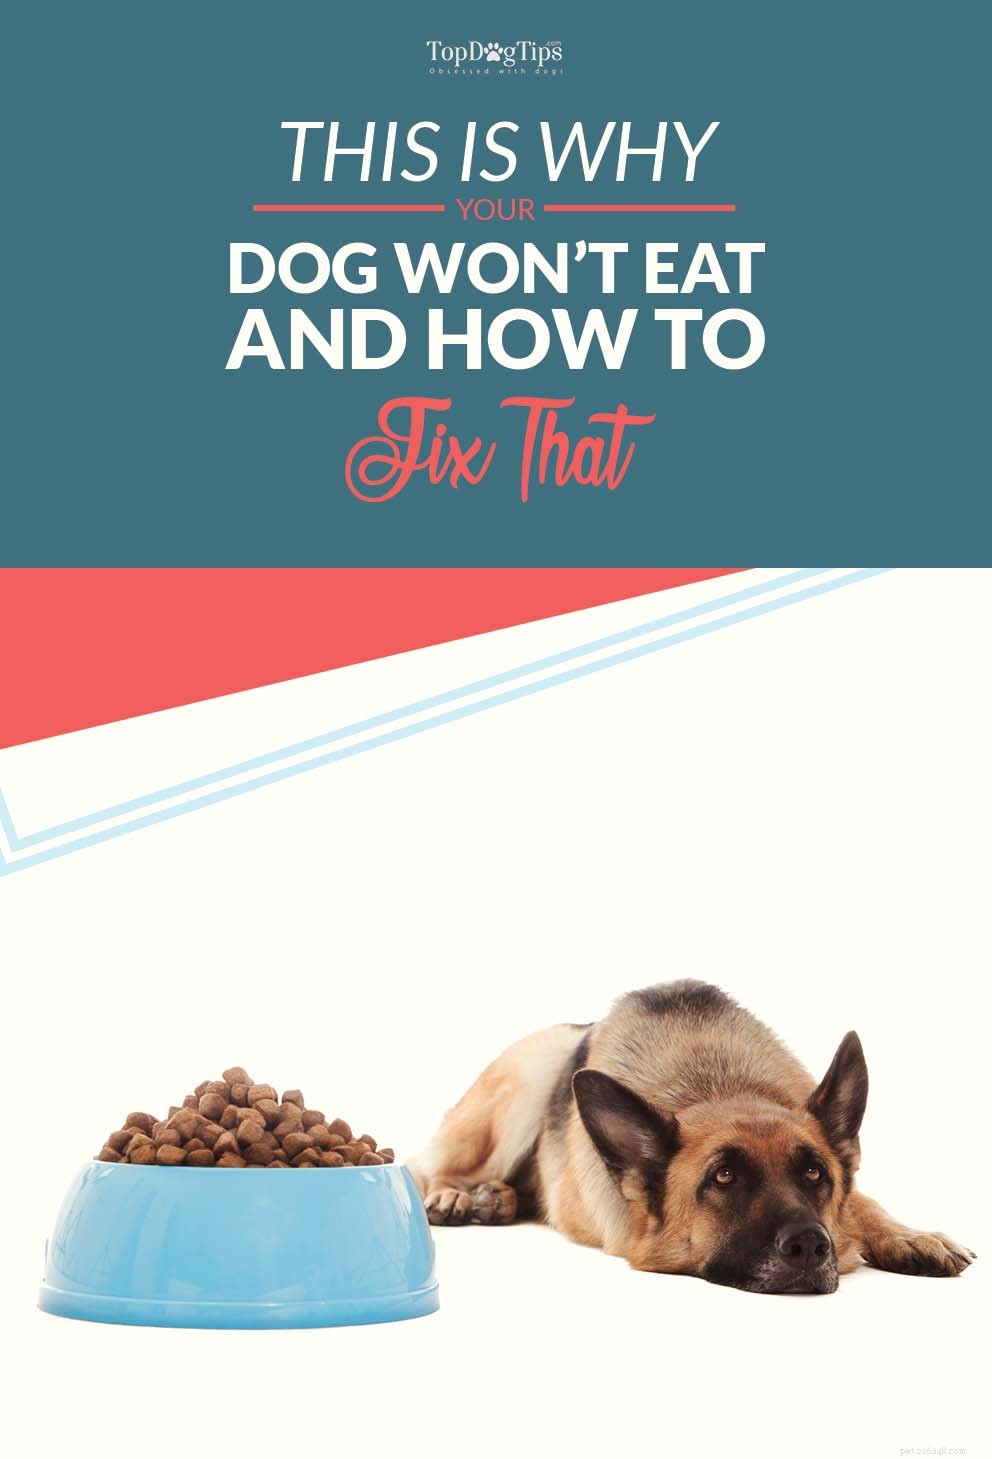 Waarom eet mijn hond niet? Dit is waarom honden voedsel kunnen weigeren